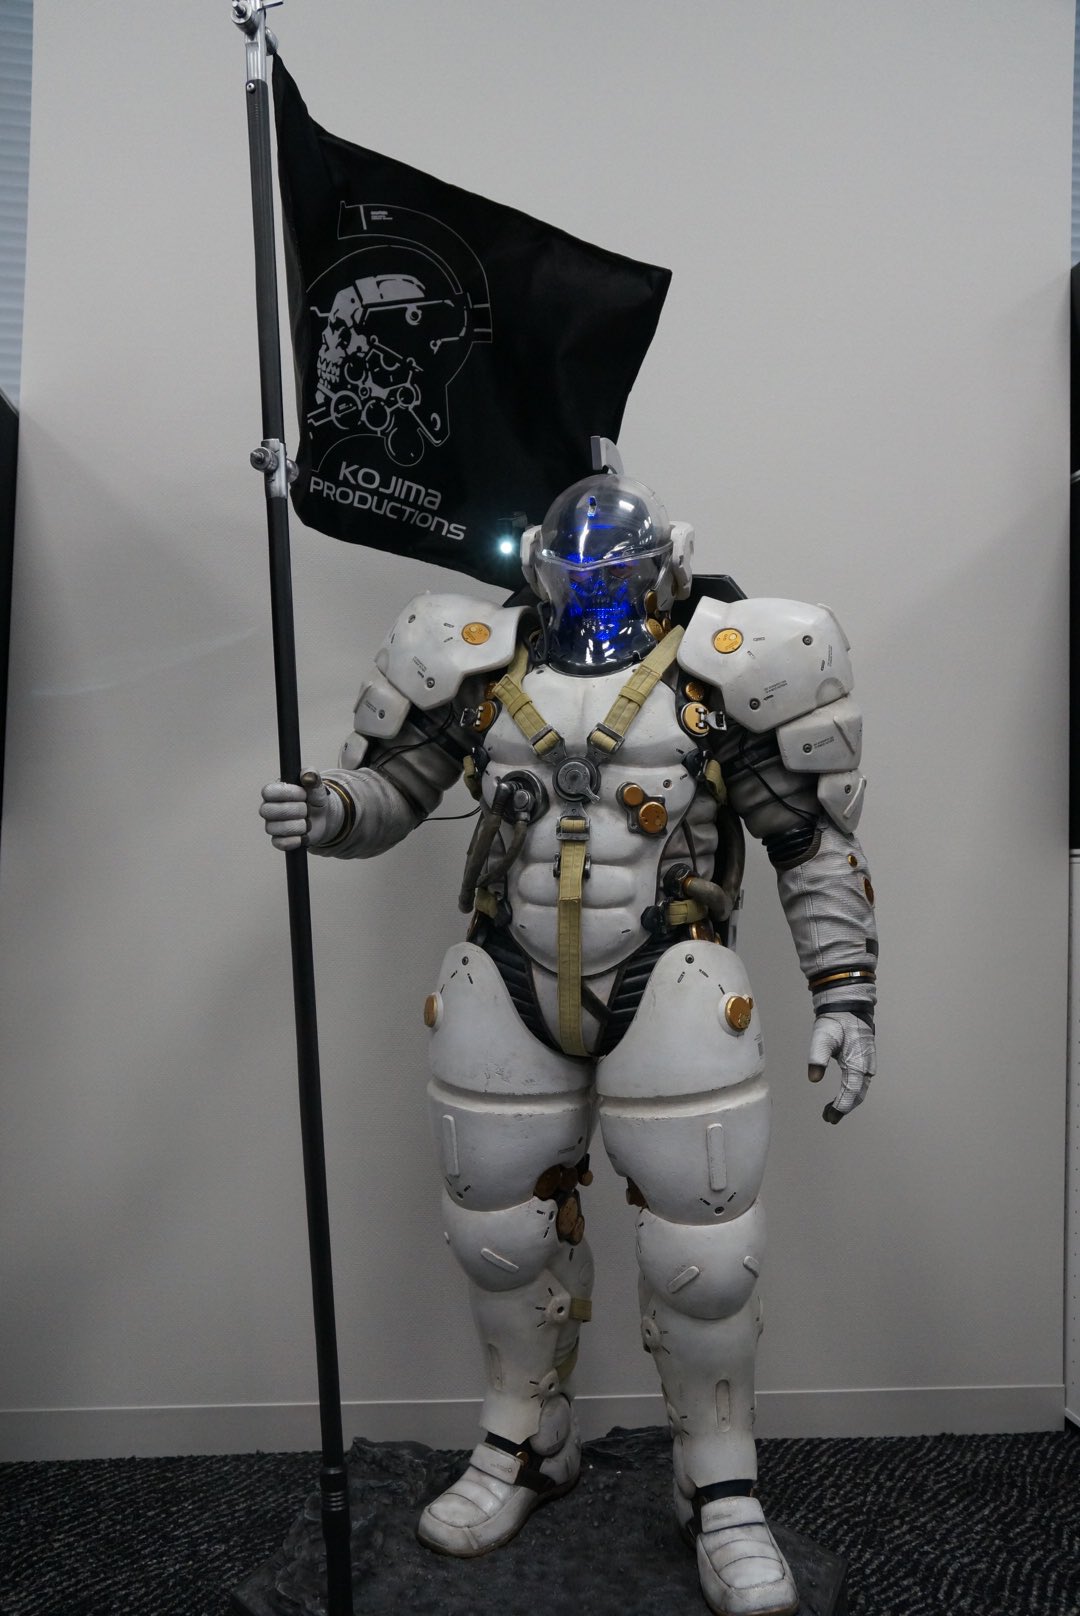 La statuette de Ludens chez Kojima Productions, le 15 décembre 2016